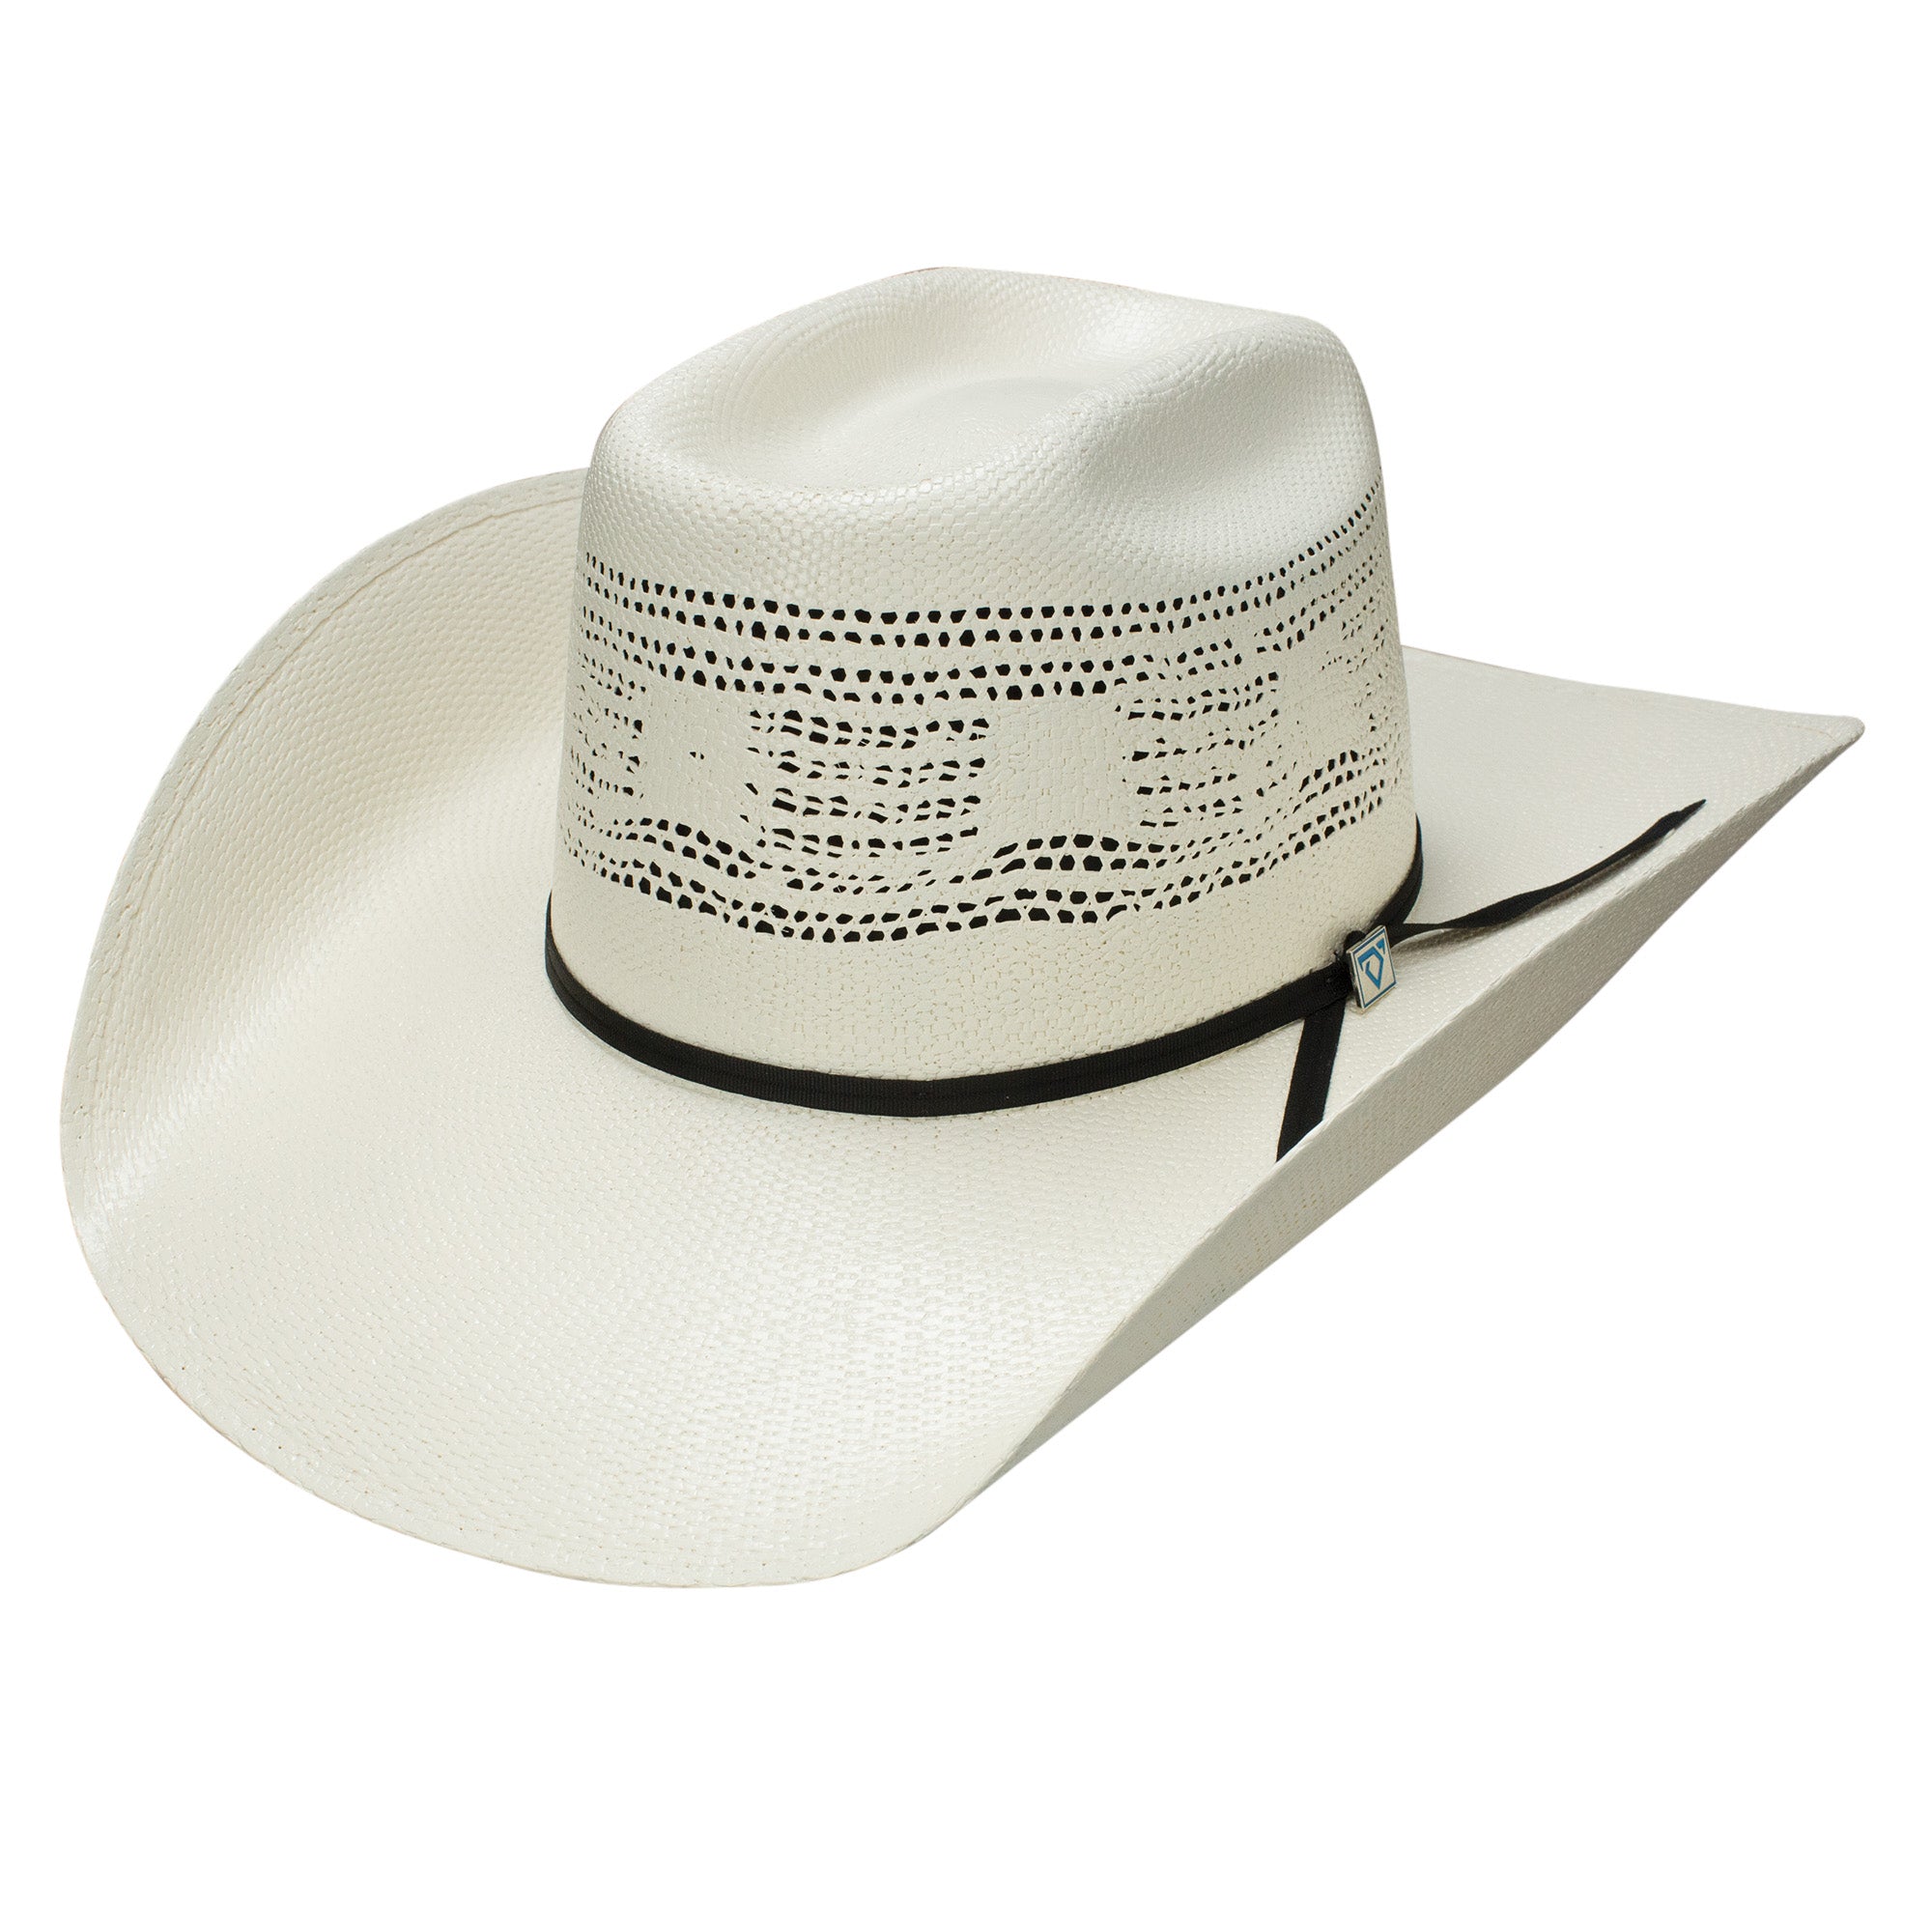 Cojo Vaquero- straw cowboy hat